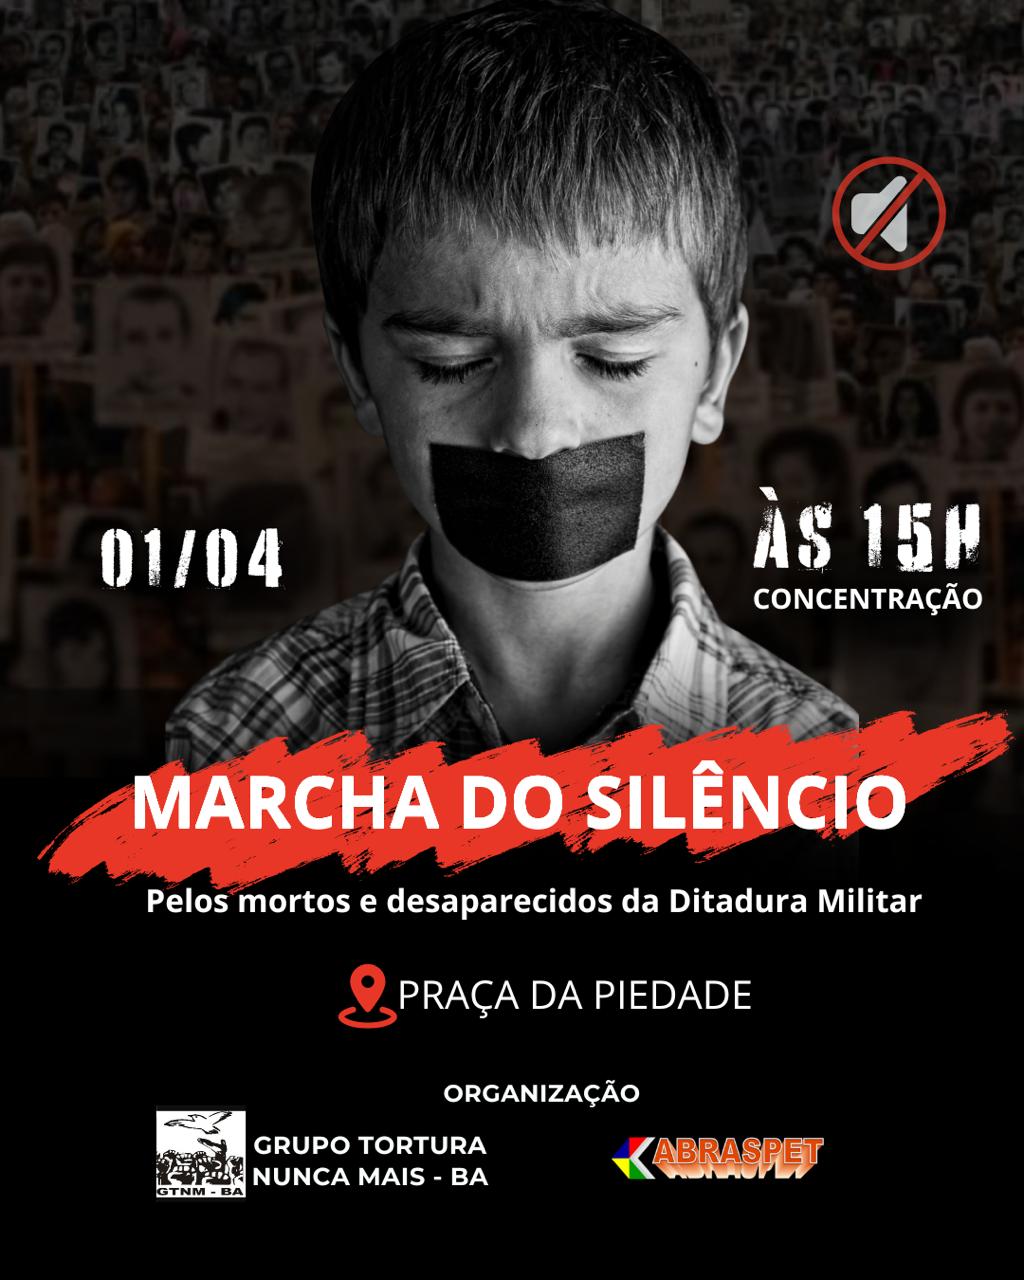 Grupo Tortura Nunca Mais realiza Marcha do Silêncio em Salvador